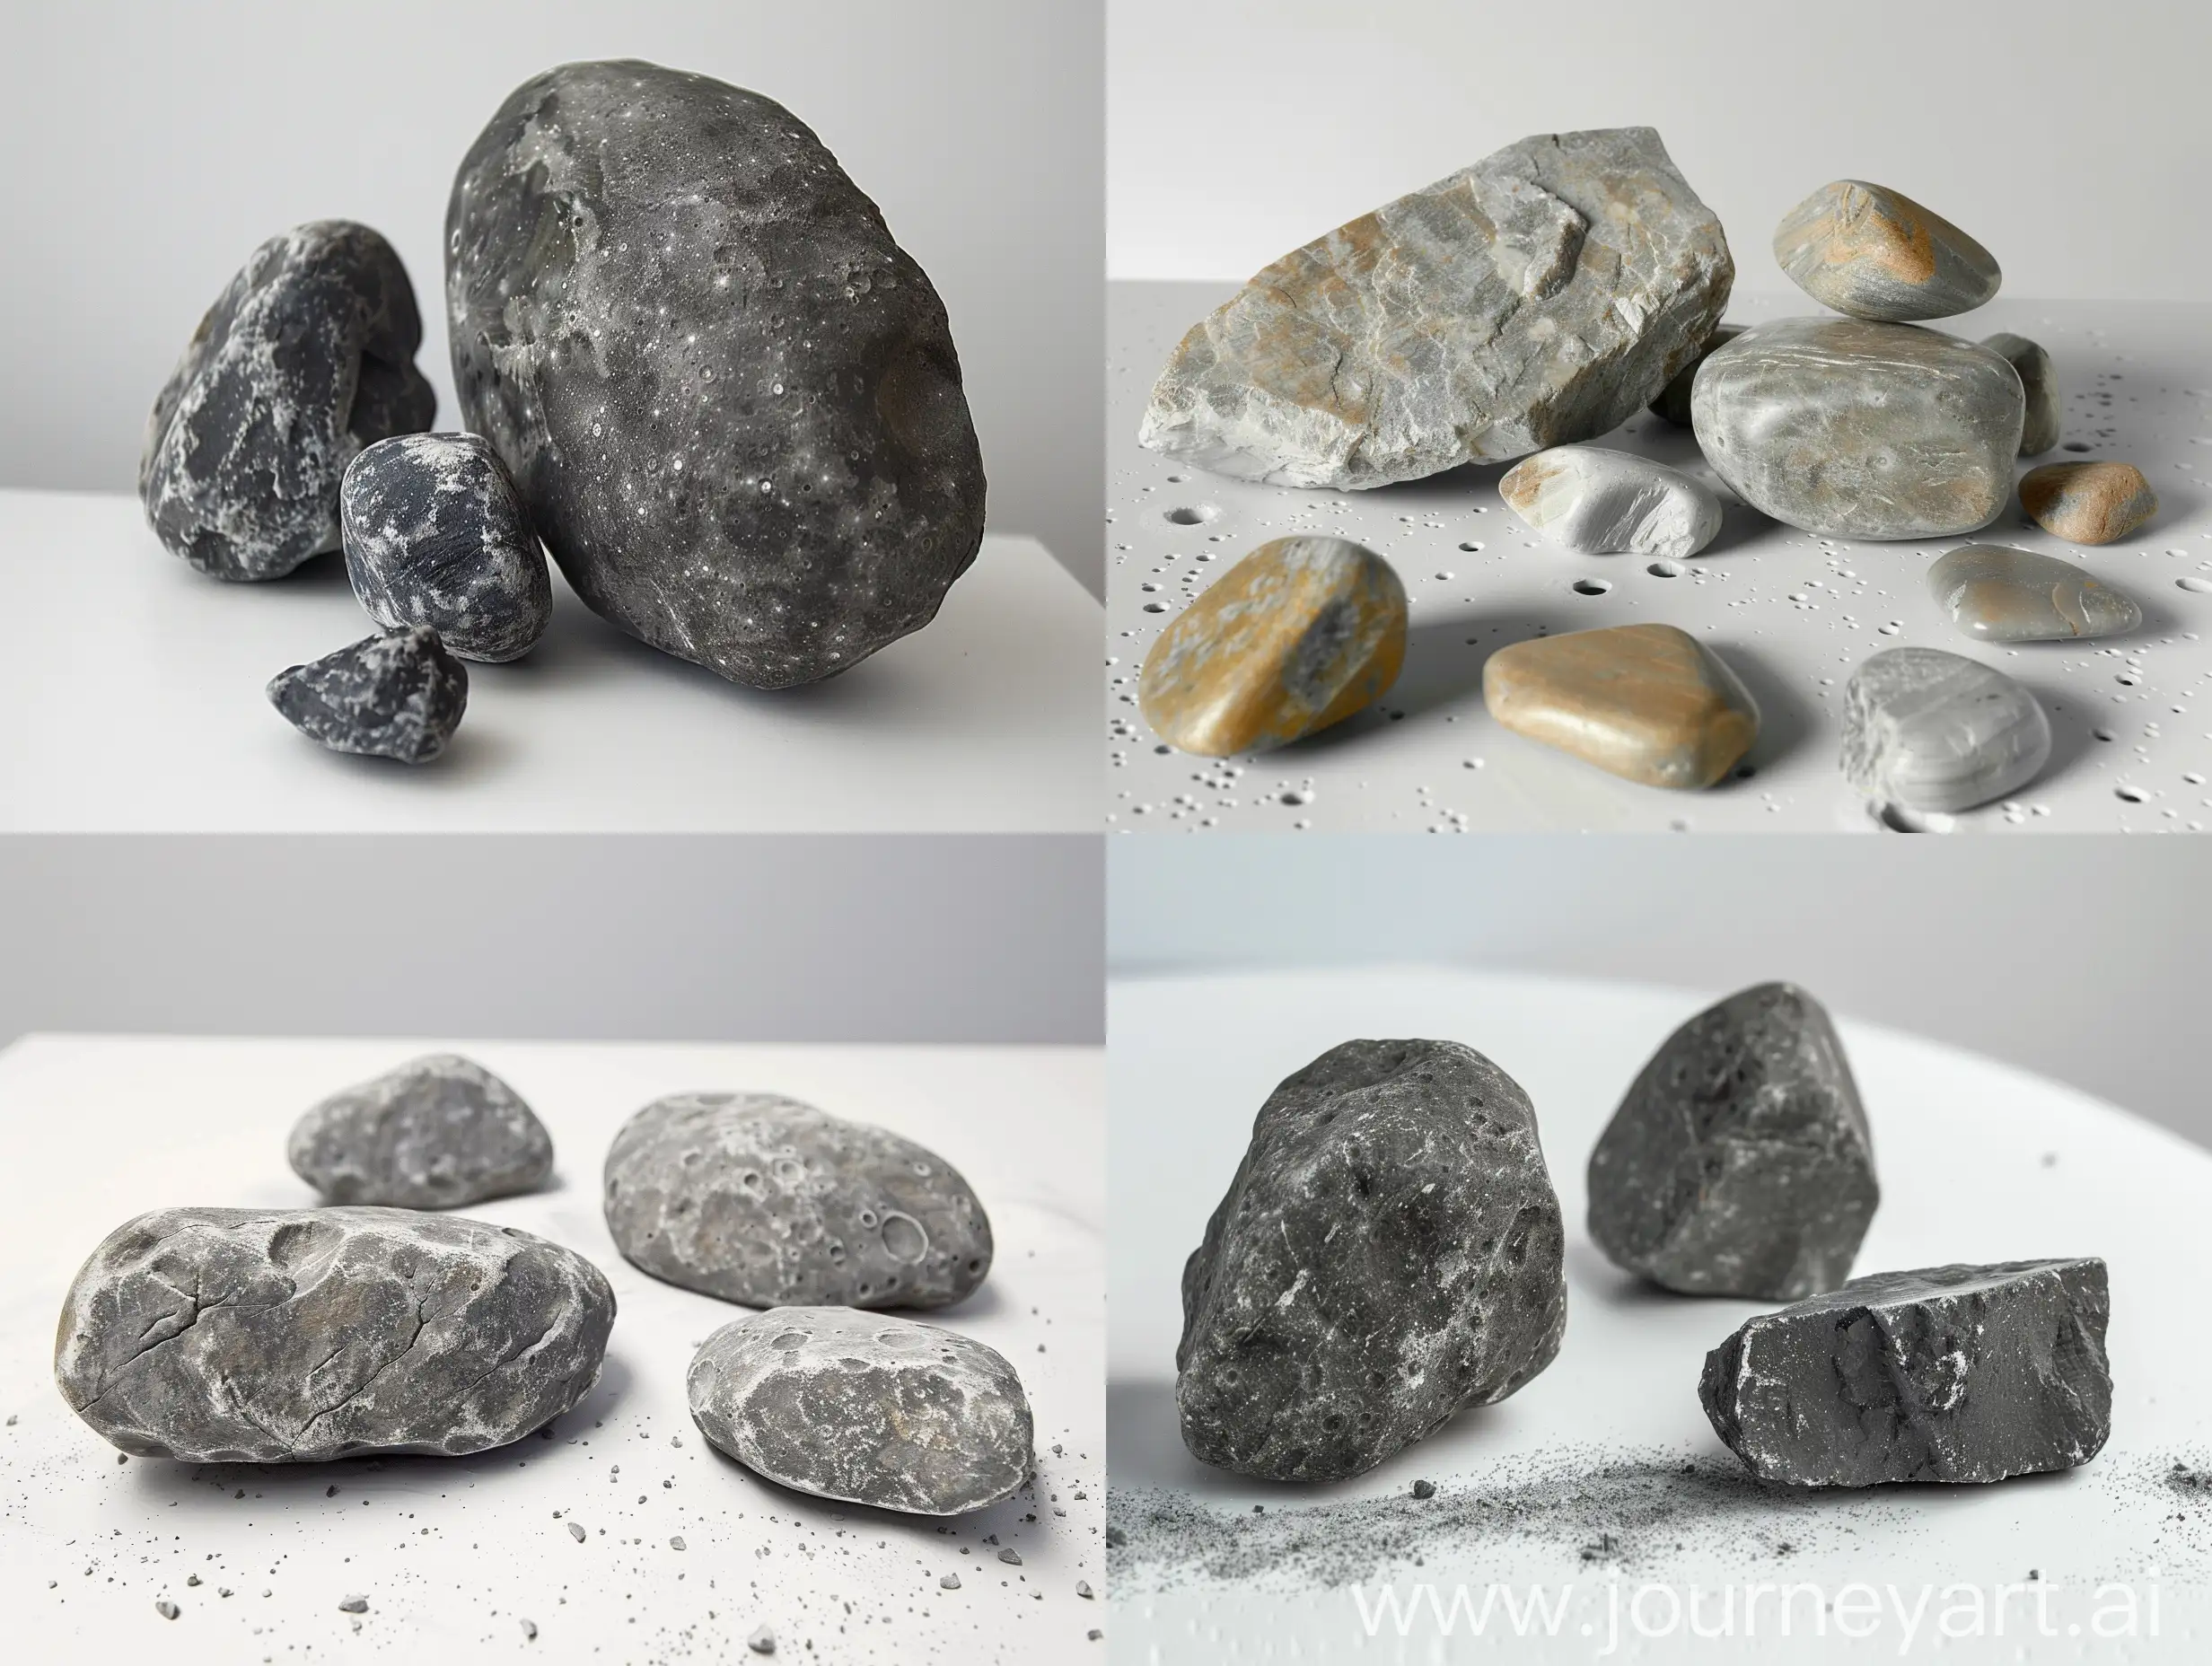 создай фотографии камней 3 см и 5 см привезенных с луны на фоне белого стола фотографии должны быть как настоящие